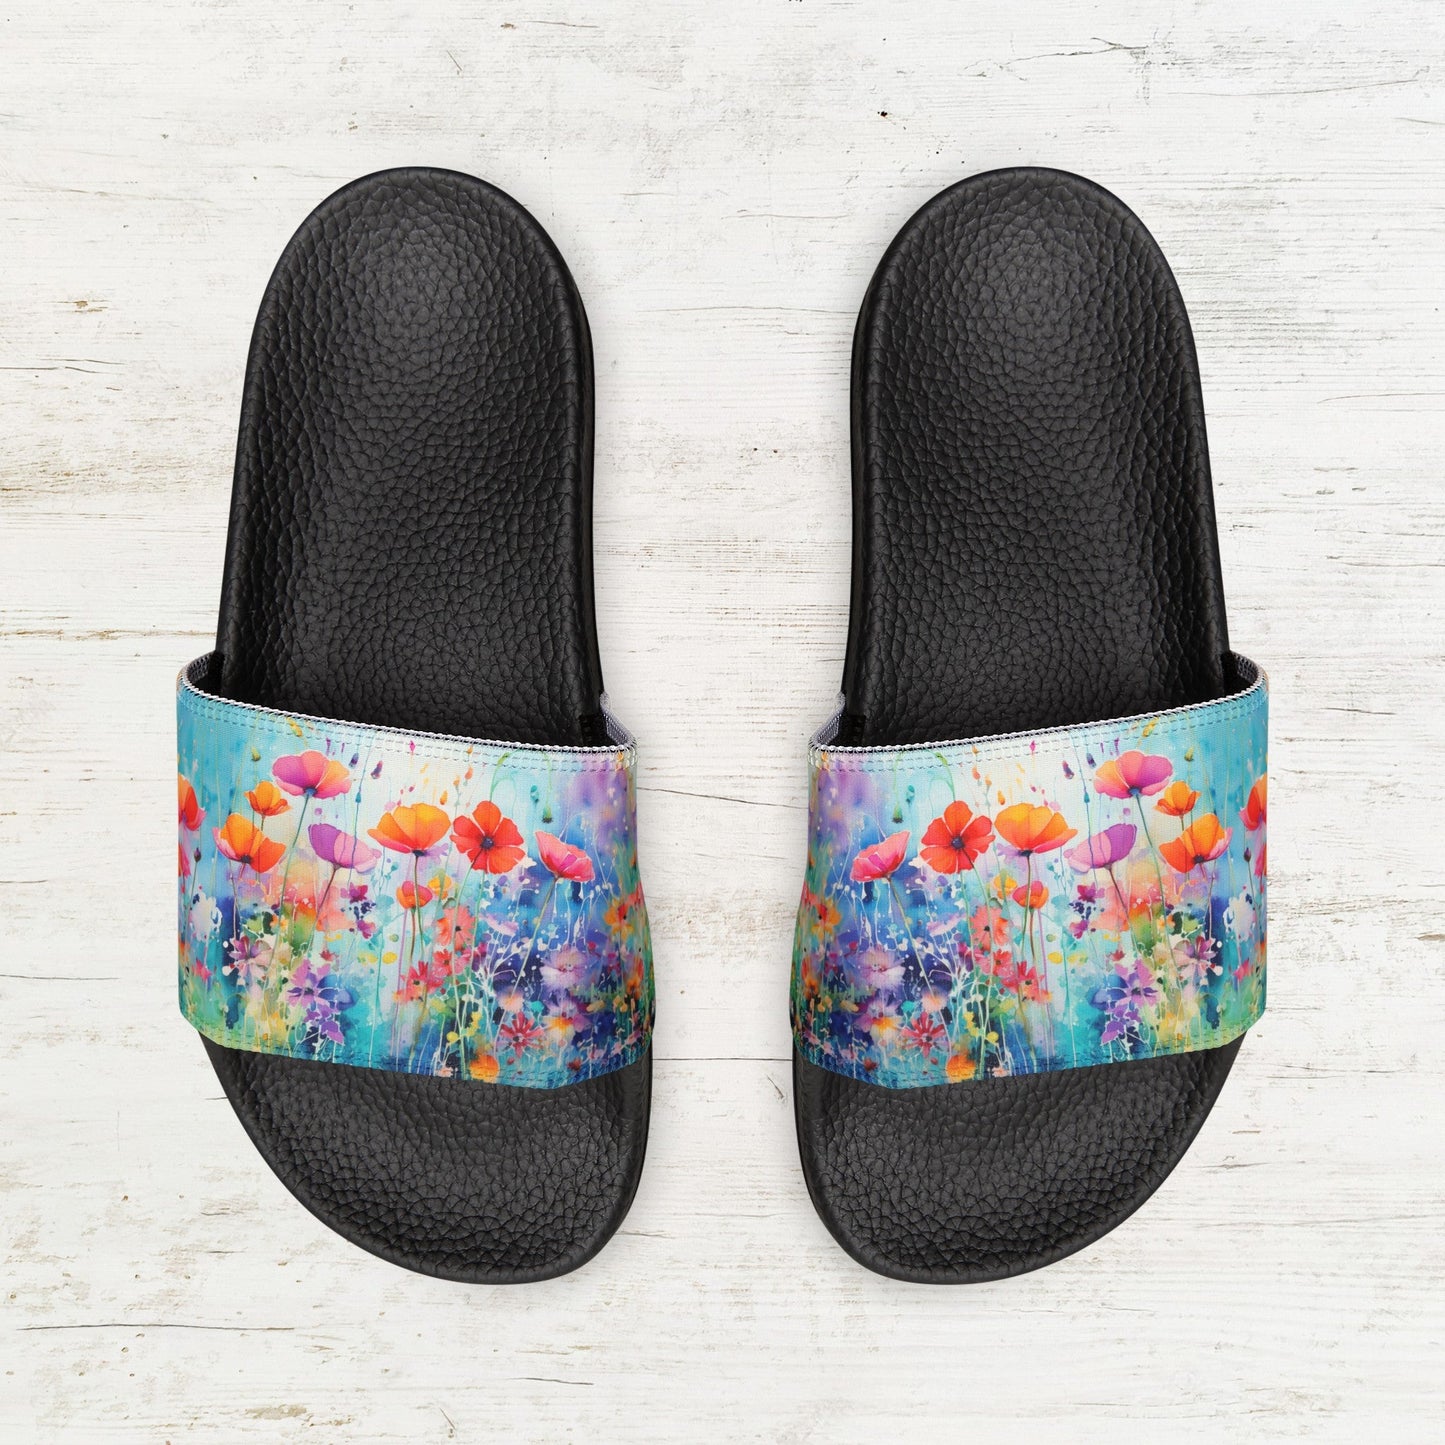 Wildflower Art Slide Sandals, Ladies and Girls Wildflower Art Shoes - FlooredByArt